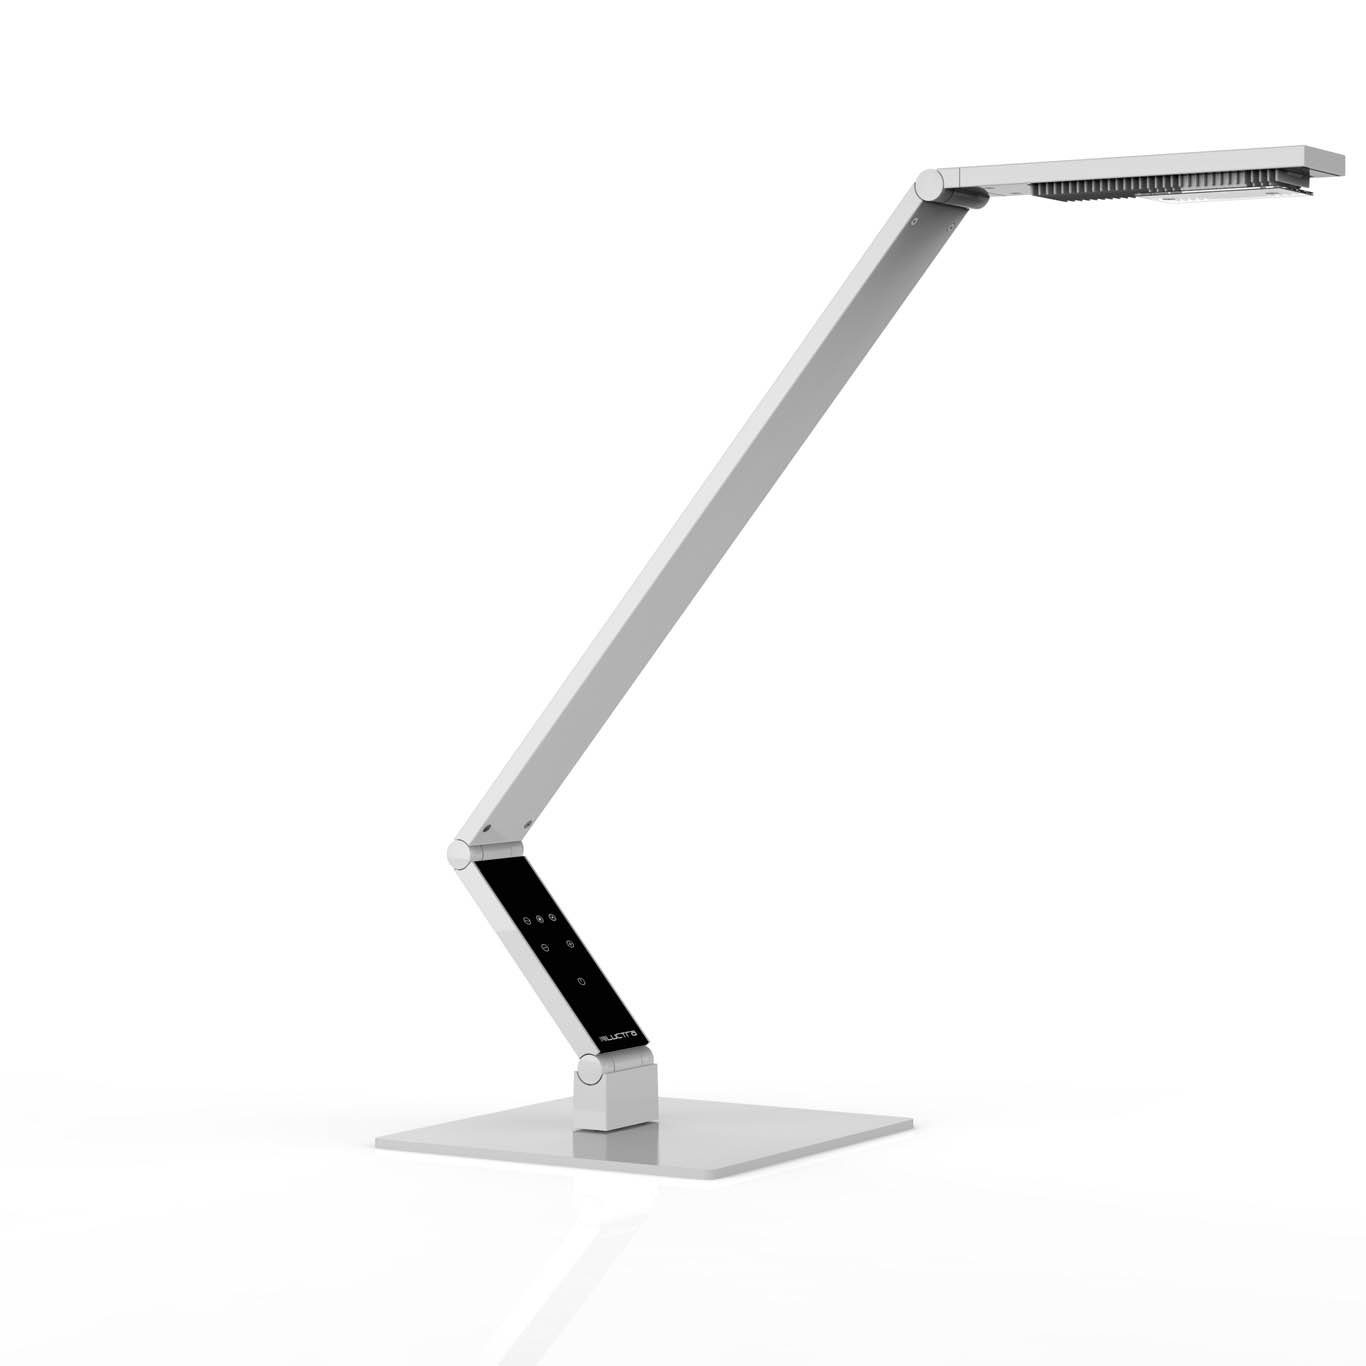 LUCTRA Tischleuchte TABLE LINEAR BASE, Table Linear Base LED Schreibtischlampe, biologisch wirksames Licht weiß